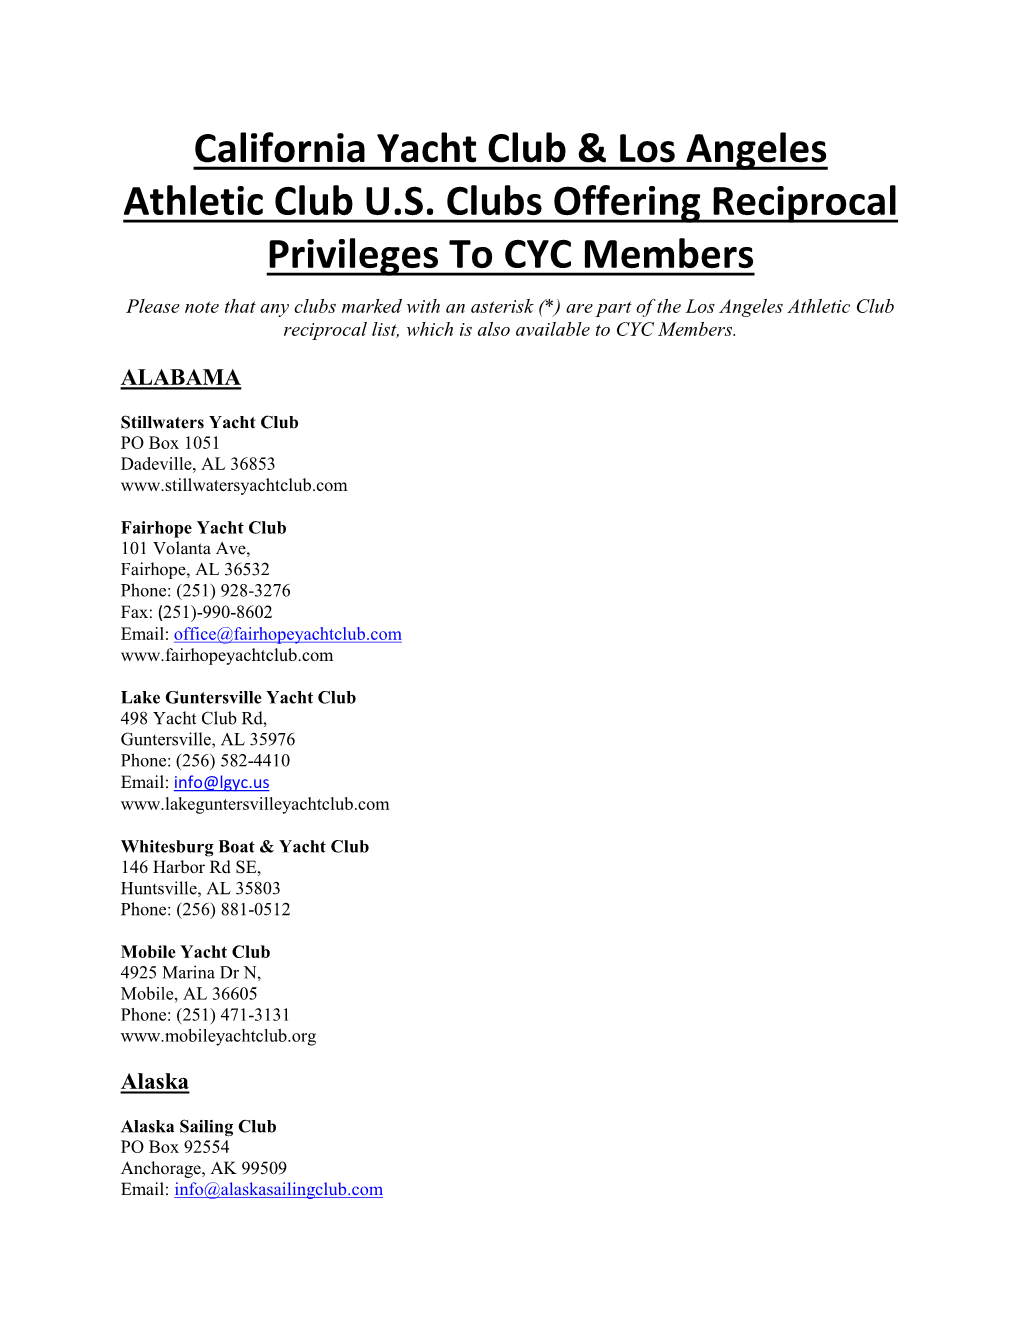 California Yacht Club & Los Angeles Athletic Club U.S. Clubs Offering